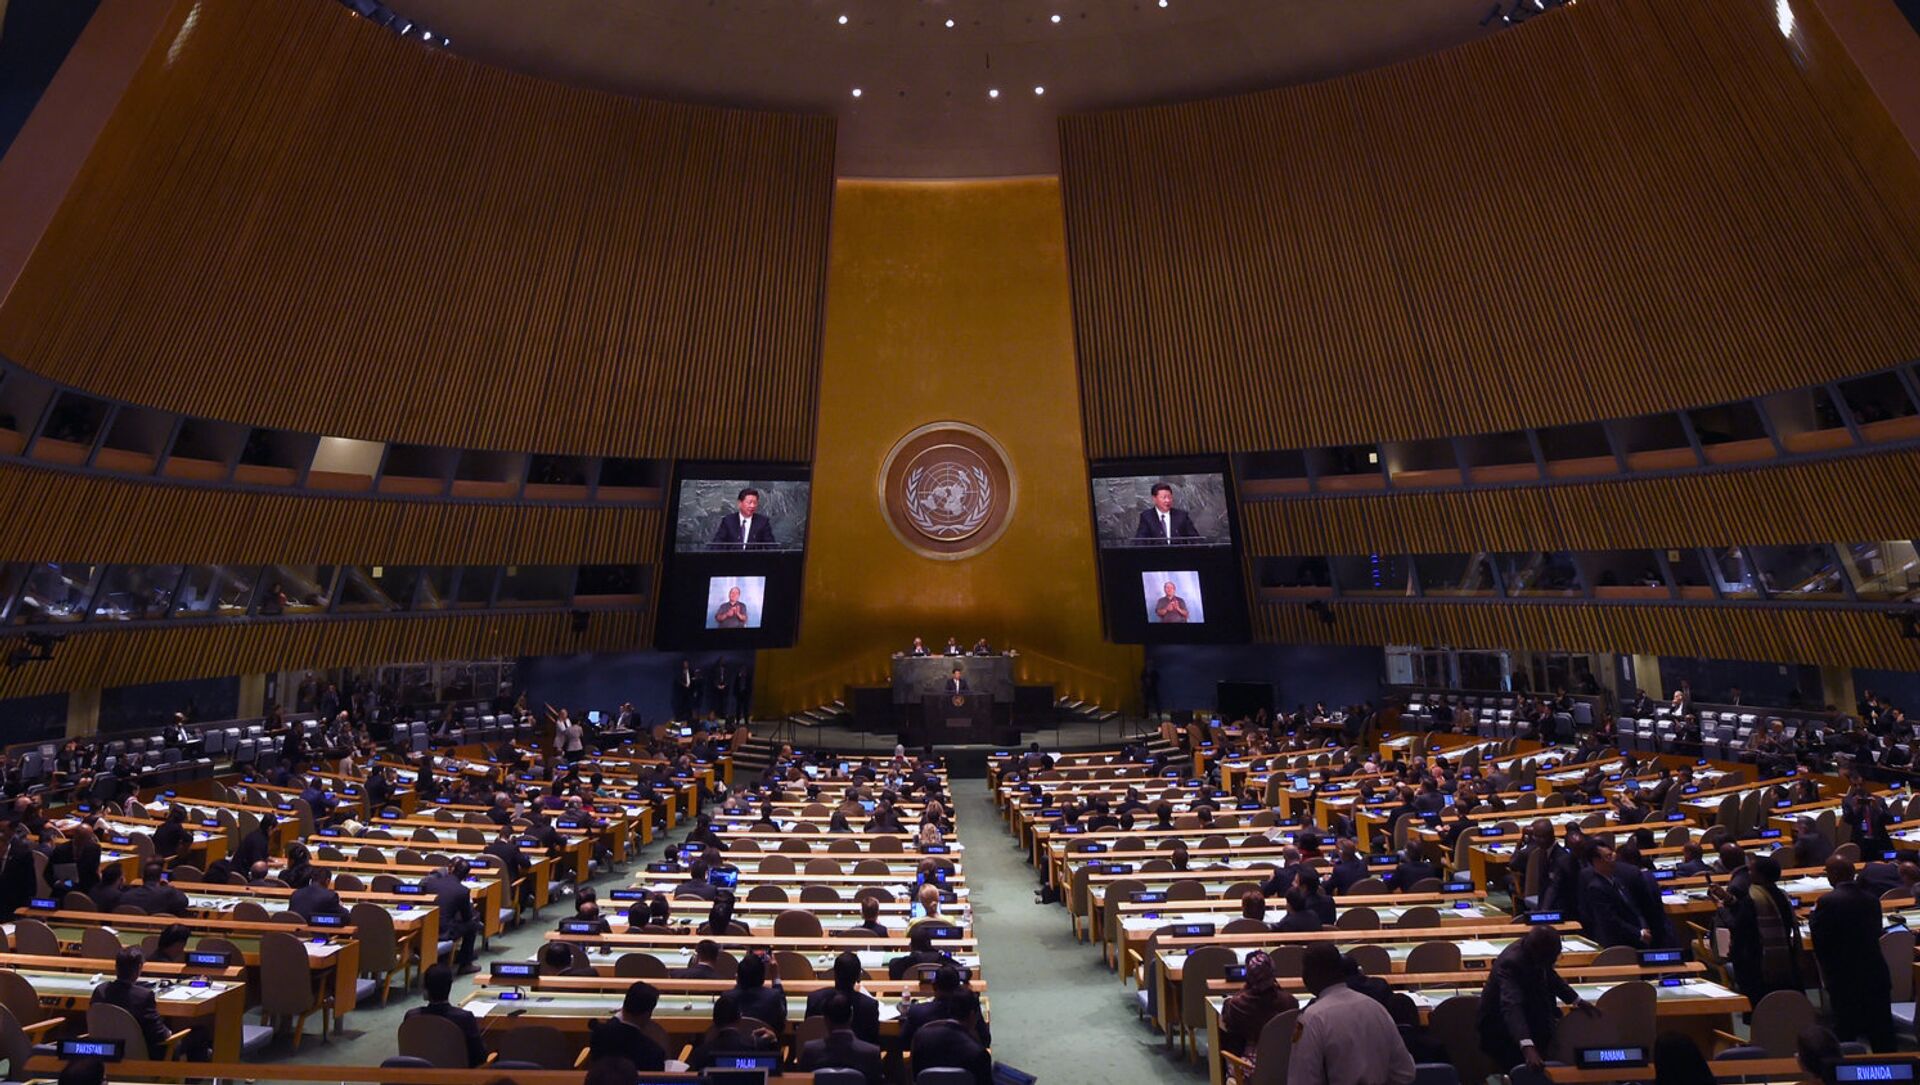 Маи оон. Генассамблея ООН 1990. Ген Асамблея ООН потолок. Генеральная Ассамблея ООН звезда Давида на потолке. Генеральная Ассамблея ООН 1992.